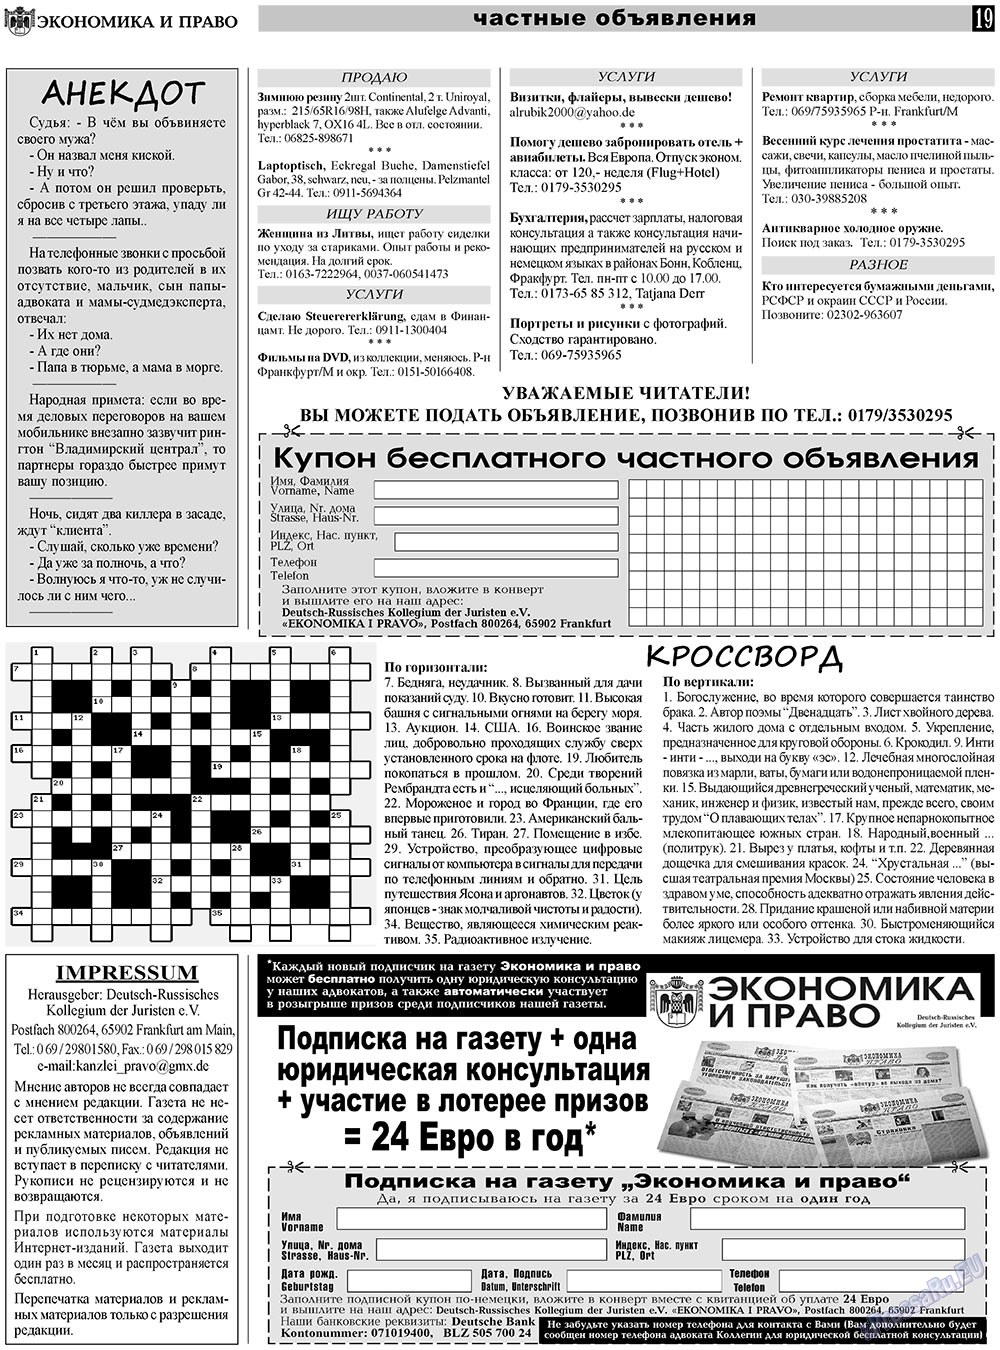 Экономика и право, газета. 2011 №3 стр.19